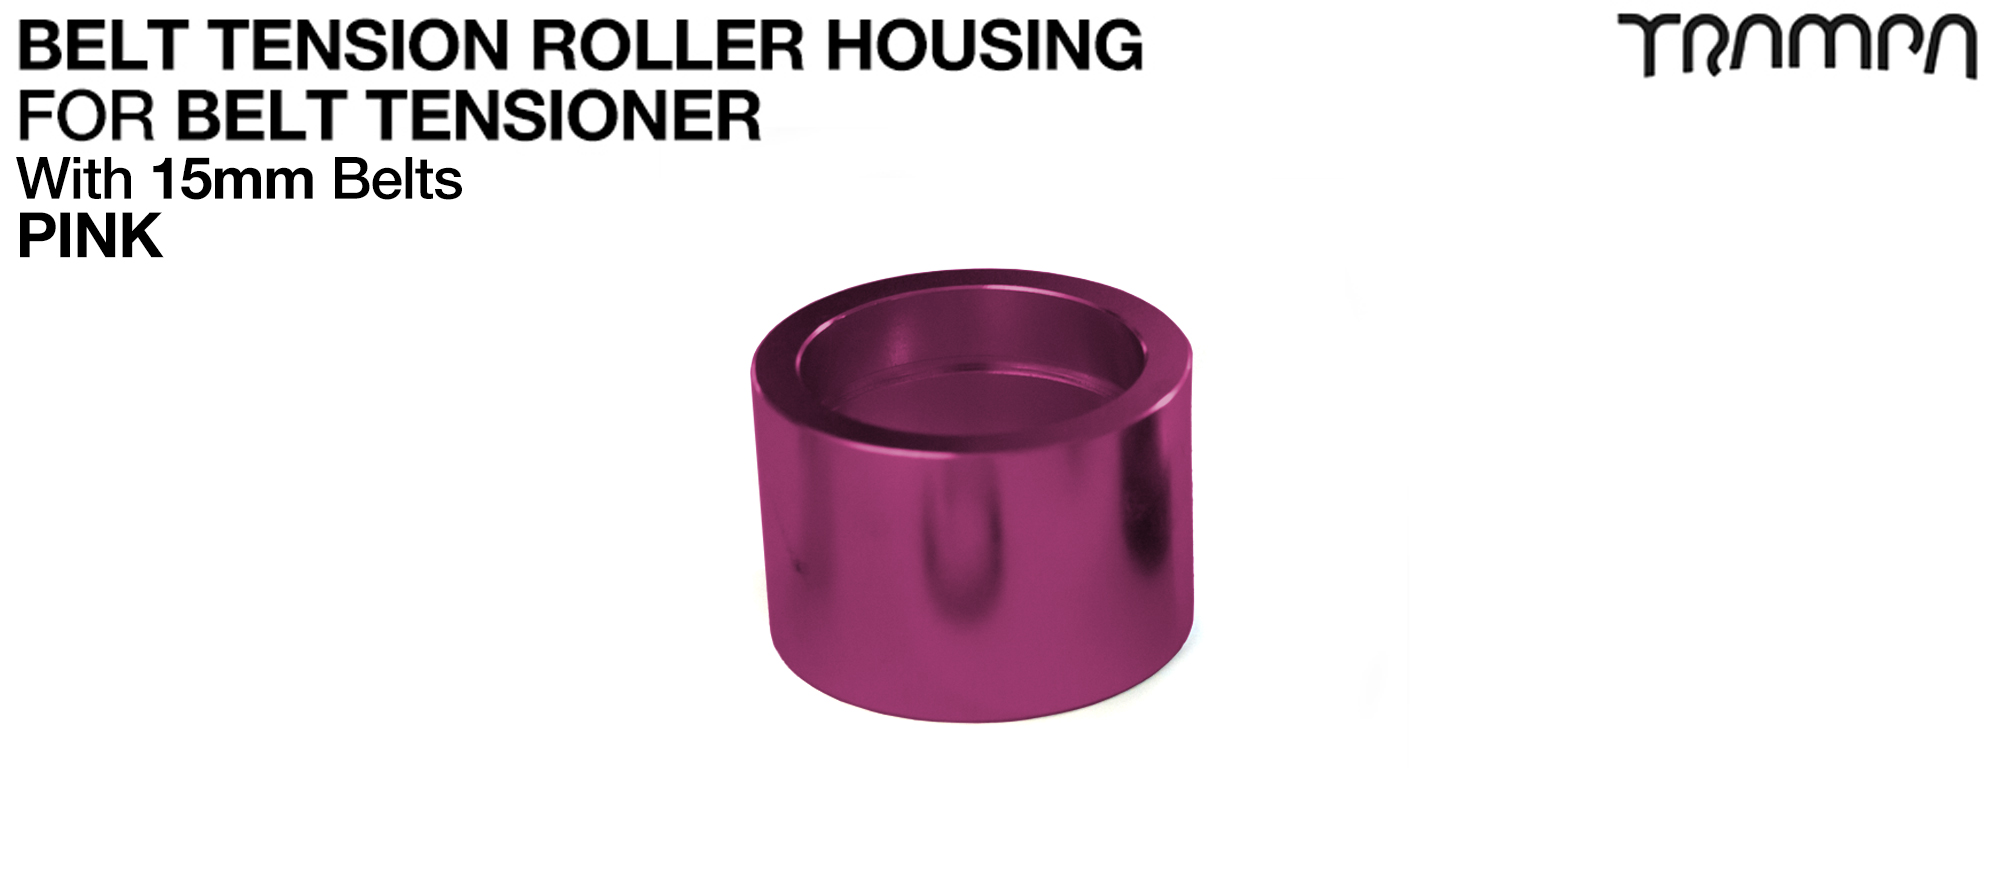 Belt Tension Roller Housing for 15mm Belts - PINK